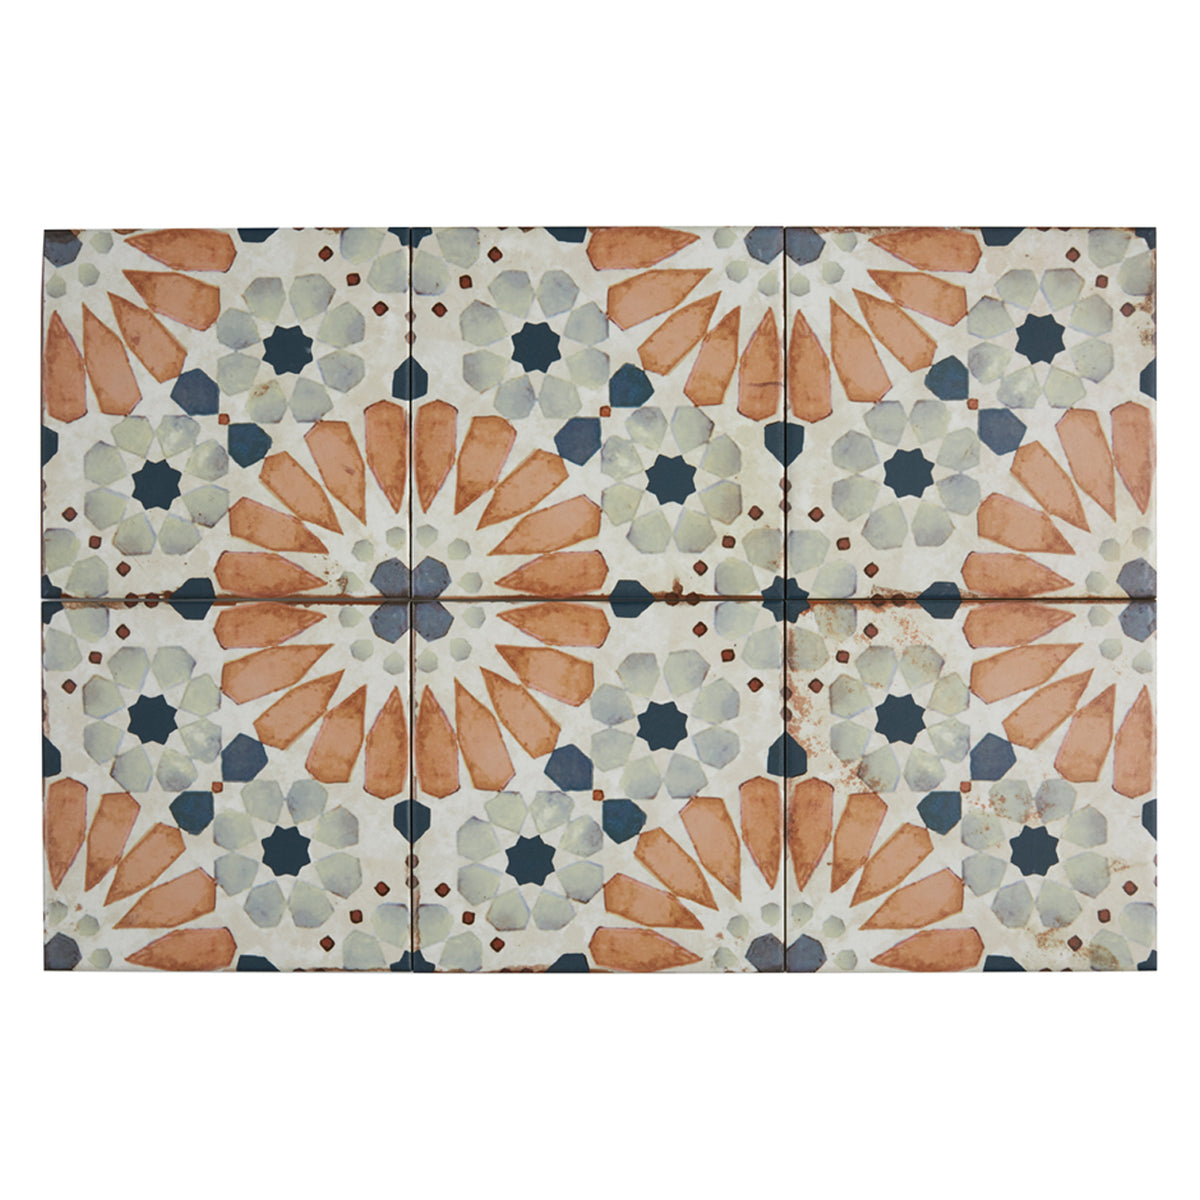 Lungarno Ceramics - Retrospectives 8 in. x 8 in. Ceramic Tile - Covent Gardens Installed